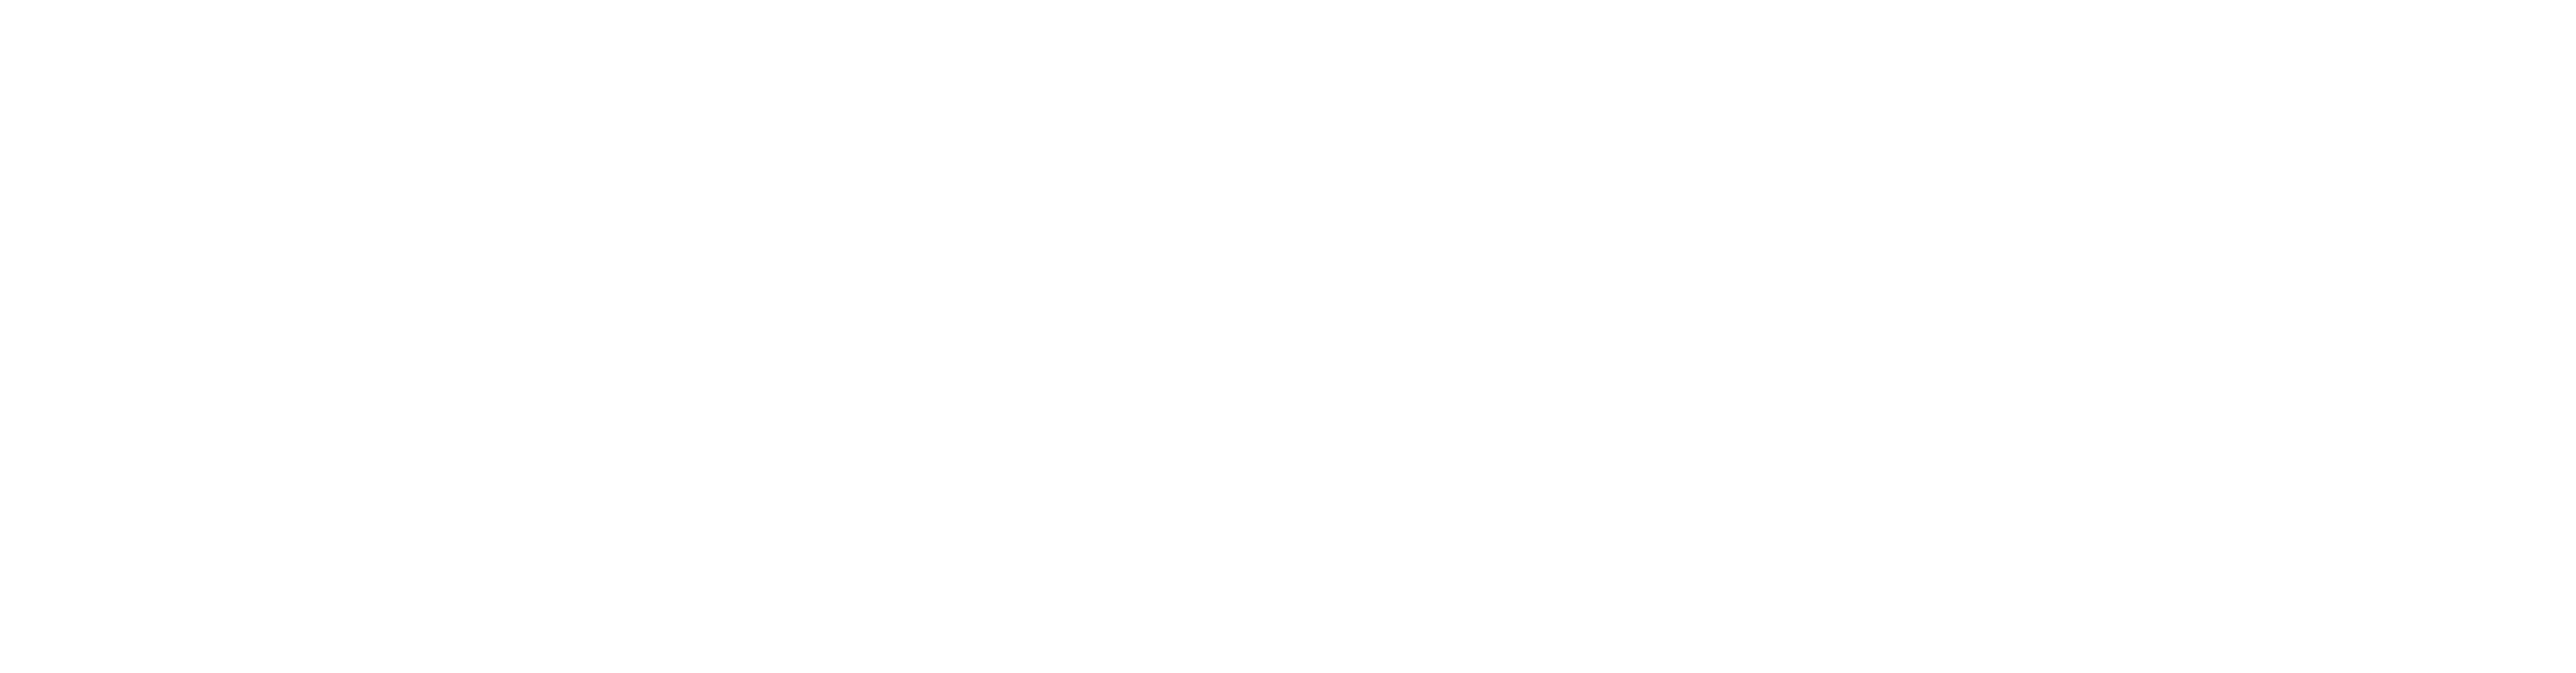 Logo de Financiado por la Union Europea blanco - Lo cistell